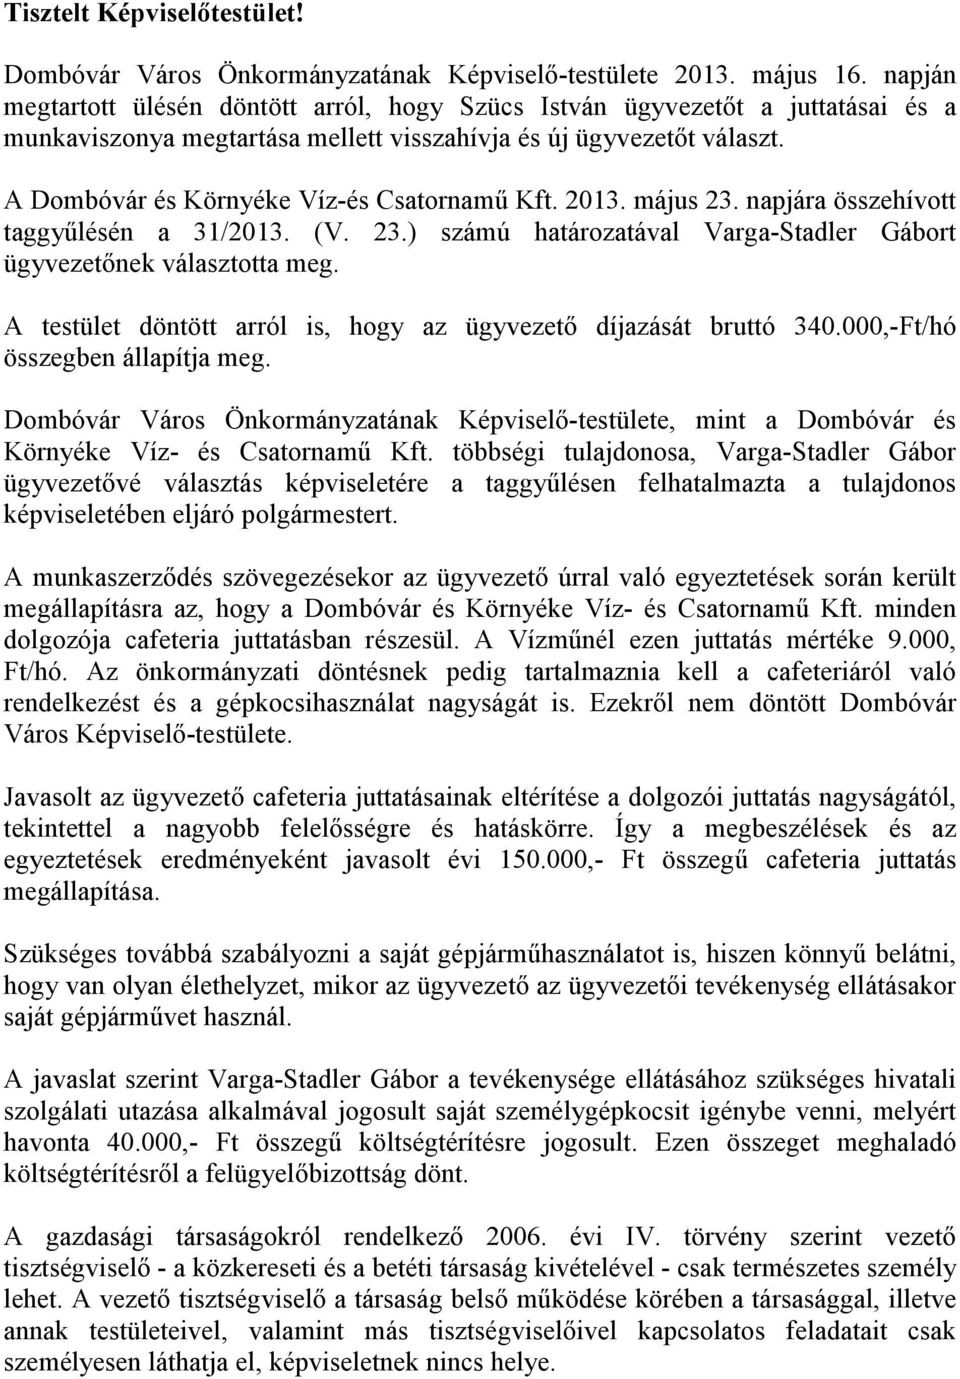 A Dombóvár és Környéke Víz-és Csatornamű Kft. 2013. május 23. napjára összehívott taggyűlésén a 31/2013. (V. 23.) számú határozatával Varga-Stadler Gábort ügyvezetőnek választotta meg.